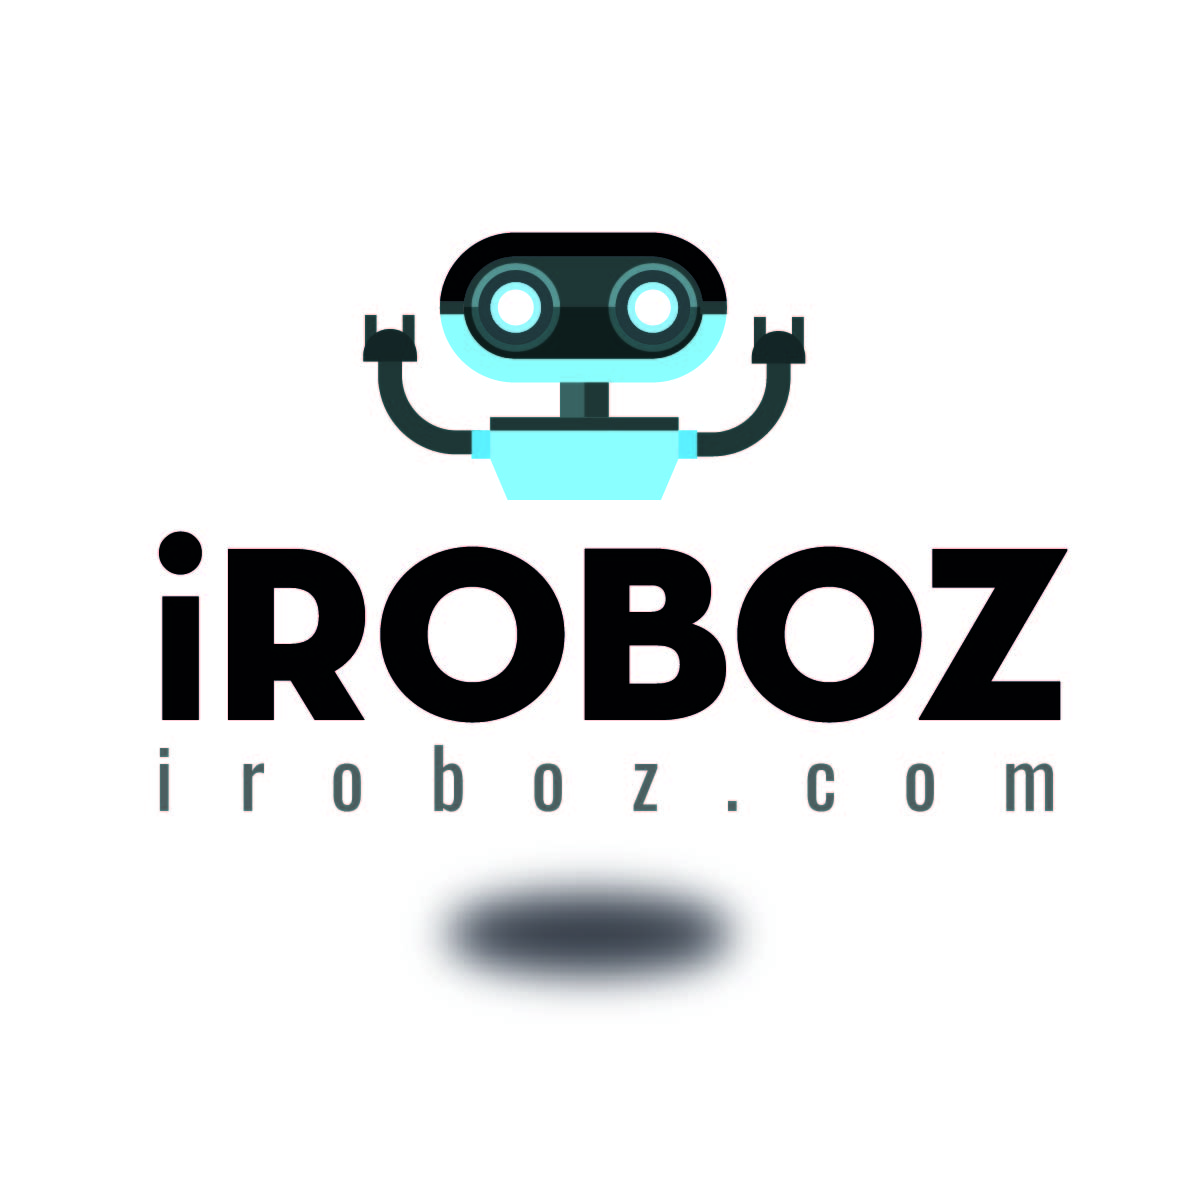 iRoboz logo - iroboz.com